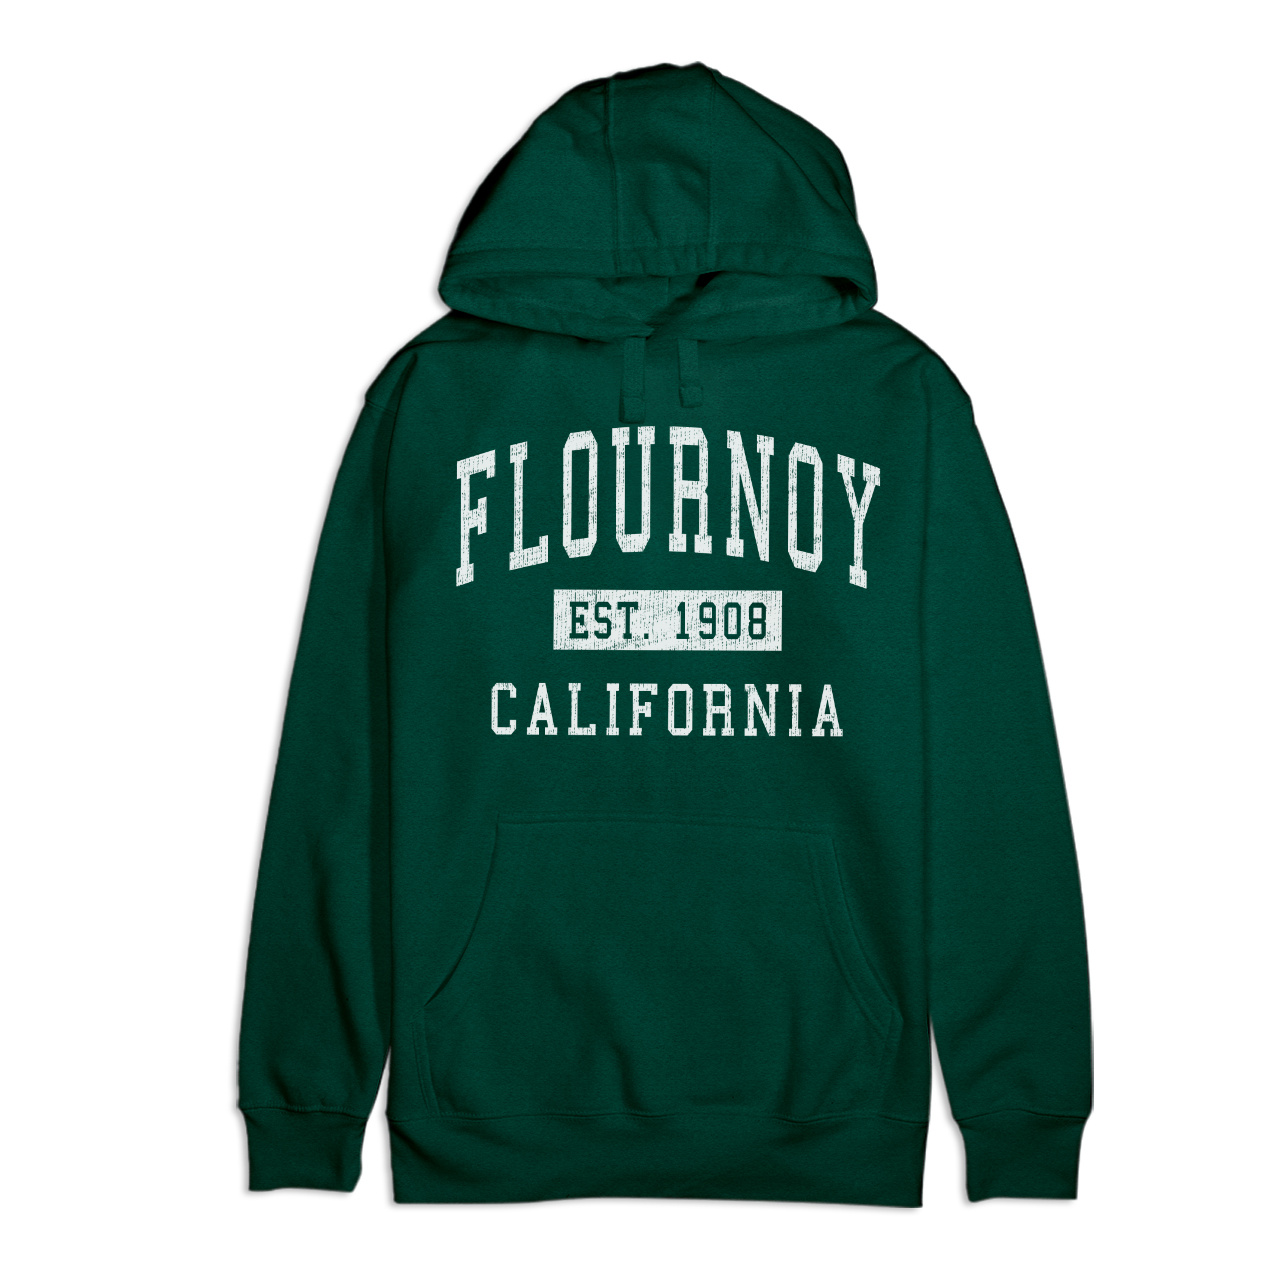 Flournoy California Classic Established Premium Cotton Hoodie - image 1 of 1